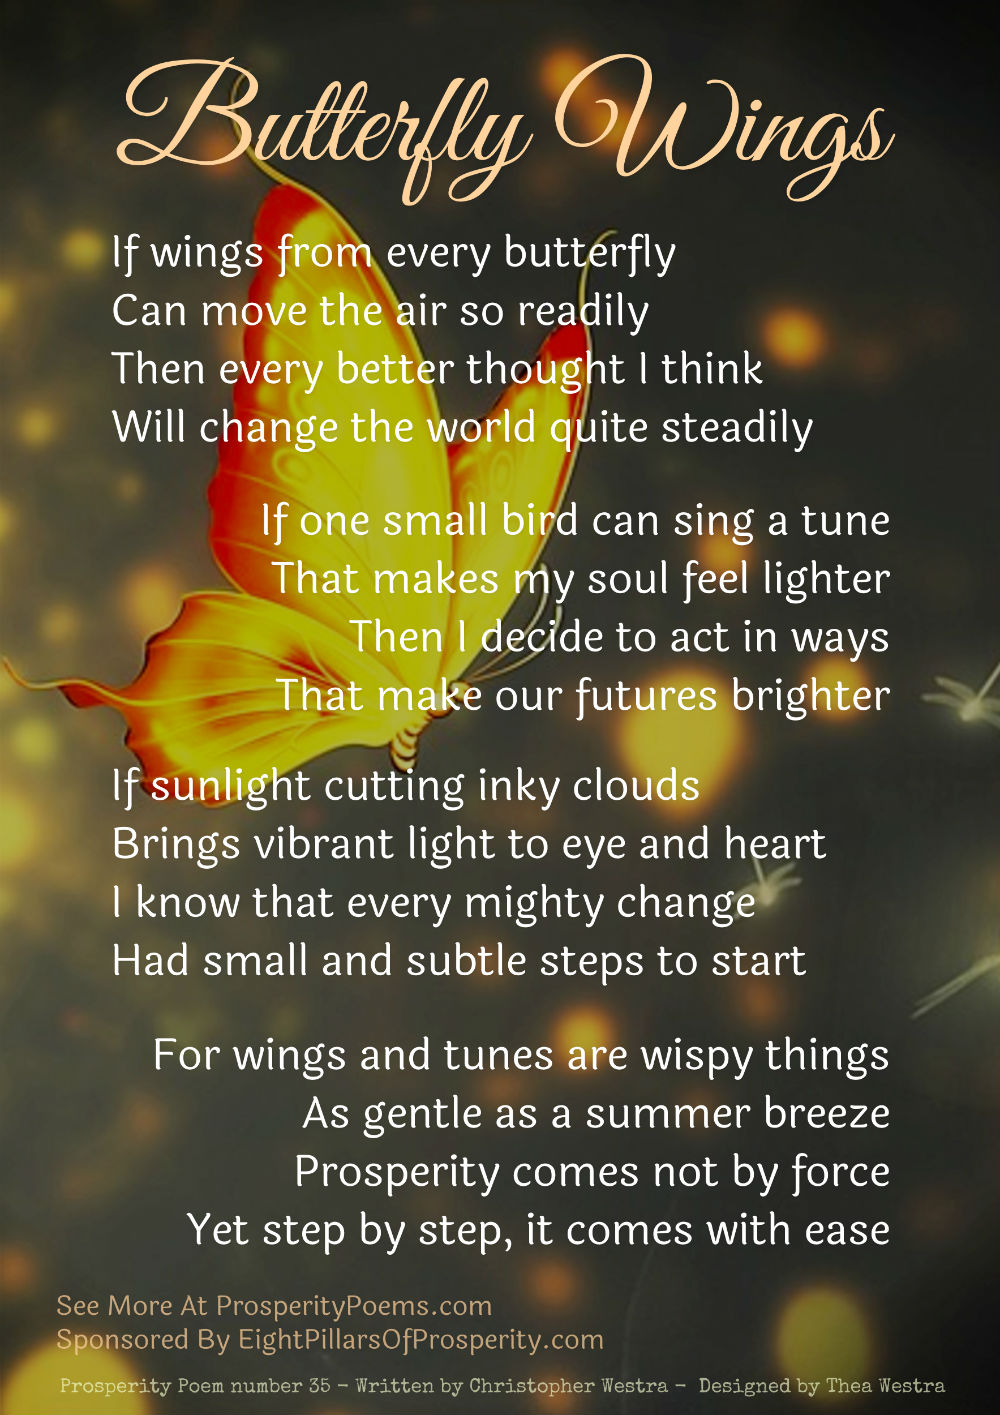 Prosperity Poem - Butterfly Wings